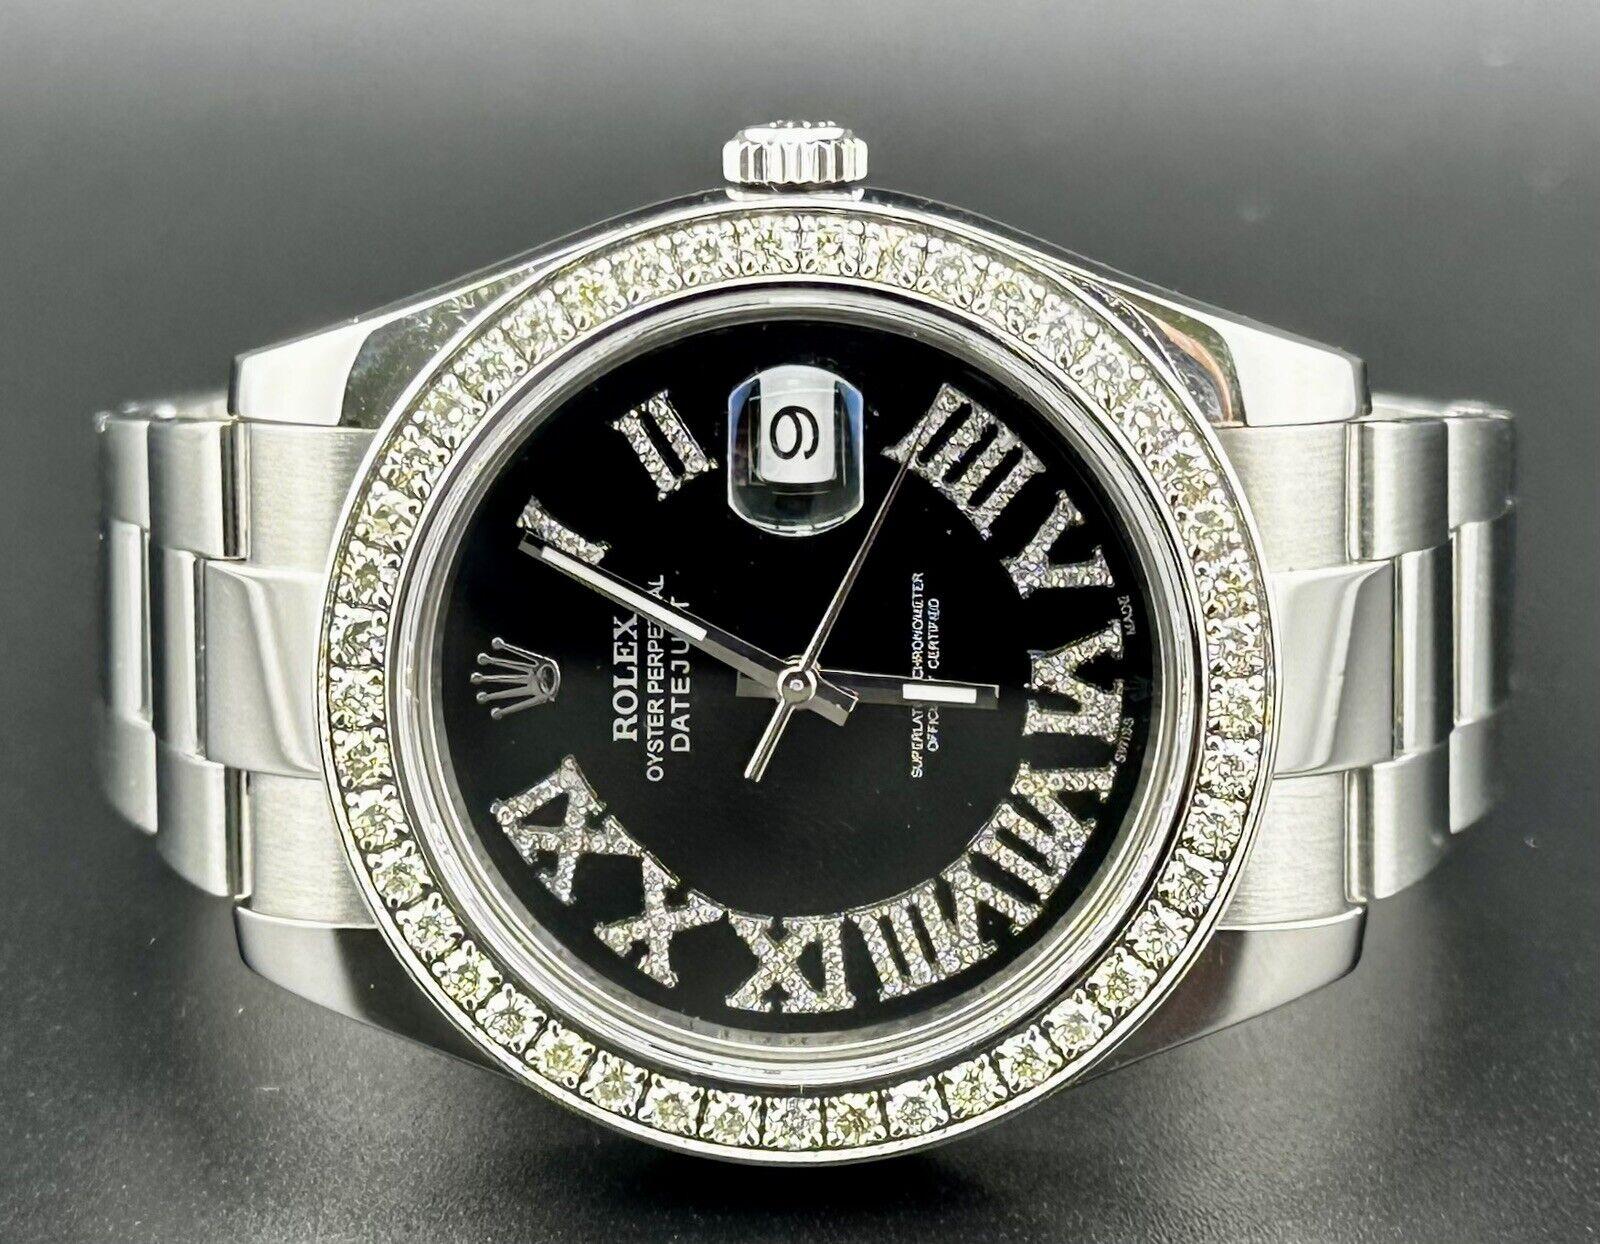 Montre Rolex Datejust 41mm. Montre d'occasion avec boîte d'origine et carte 2015. La montre est 100% authentique et est accompagnée d'une carte d'authenticité. La référence de la montre est 116300 et elle est en excellent état (voir photos). La